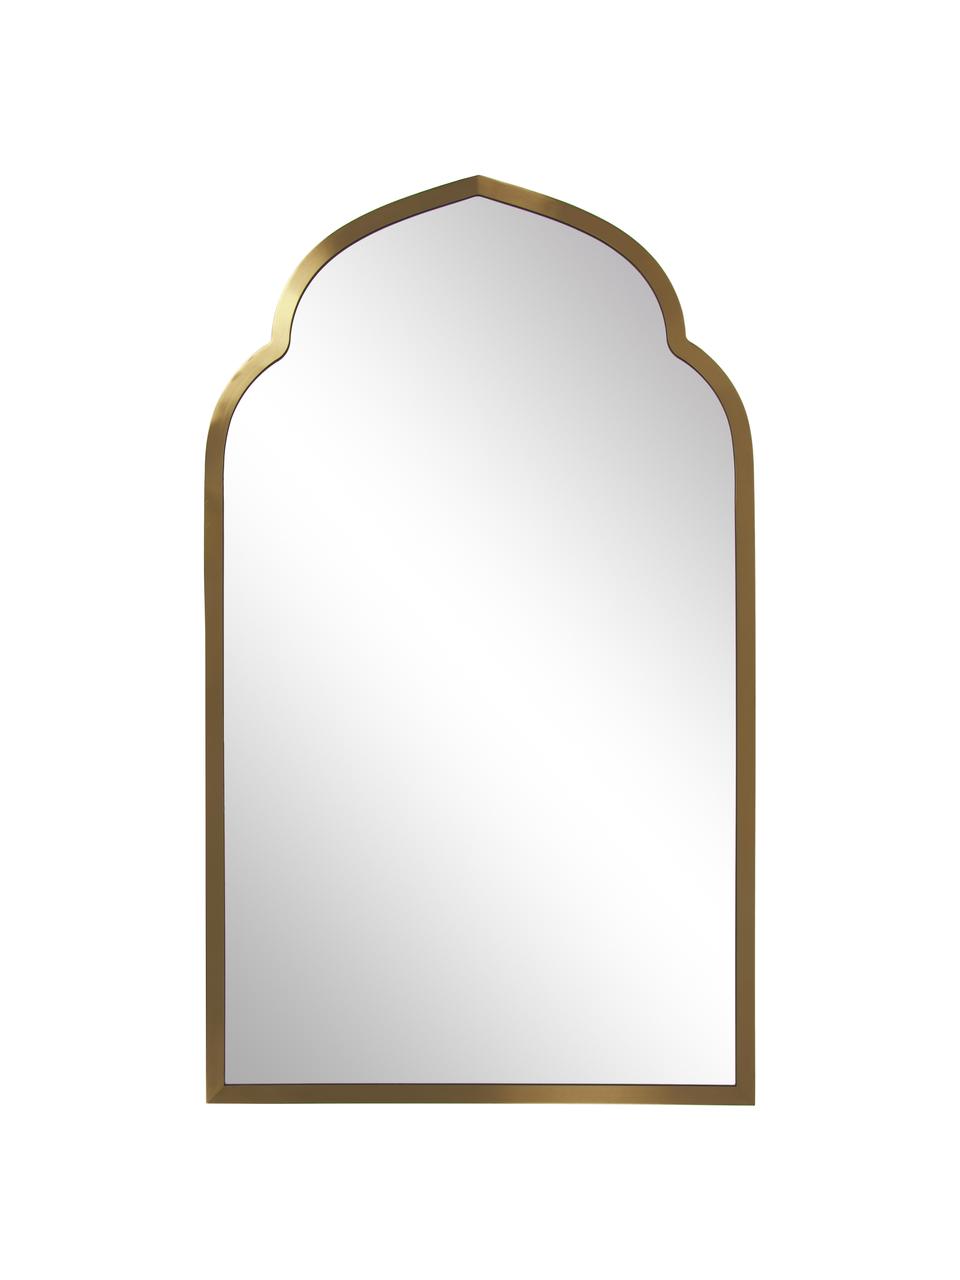 Bogen-Wandspiegel Laviena mit messingfarbenem Metallrahmen, Spiegelfläche: Spiegelglas, Rahmen: Metall, Gold, B 60 x H 100 cm